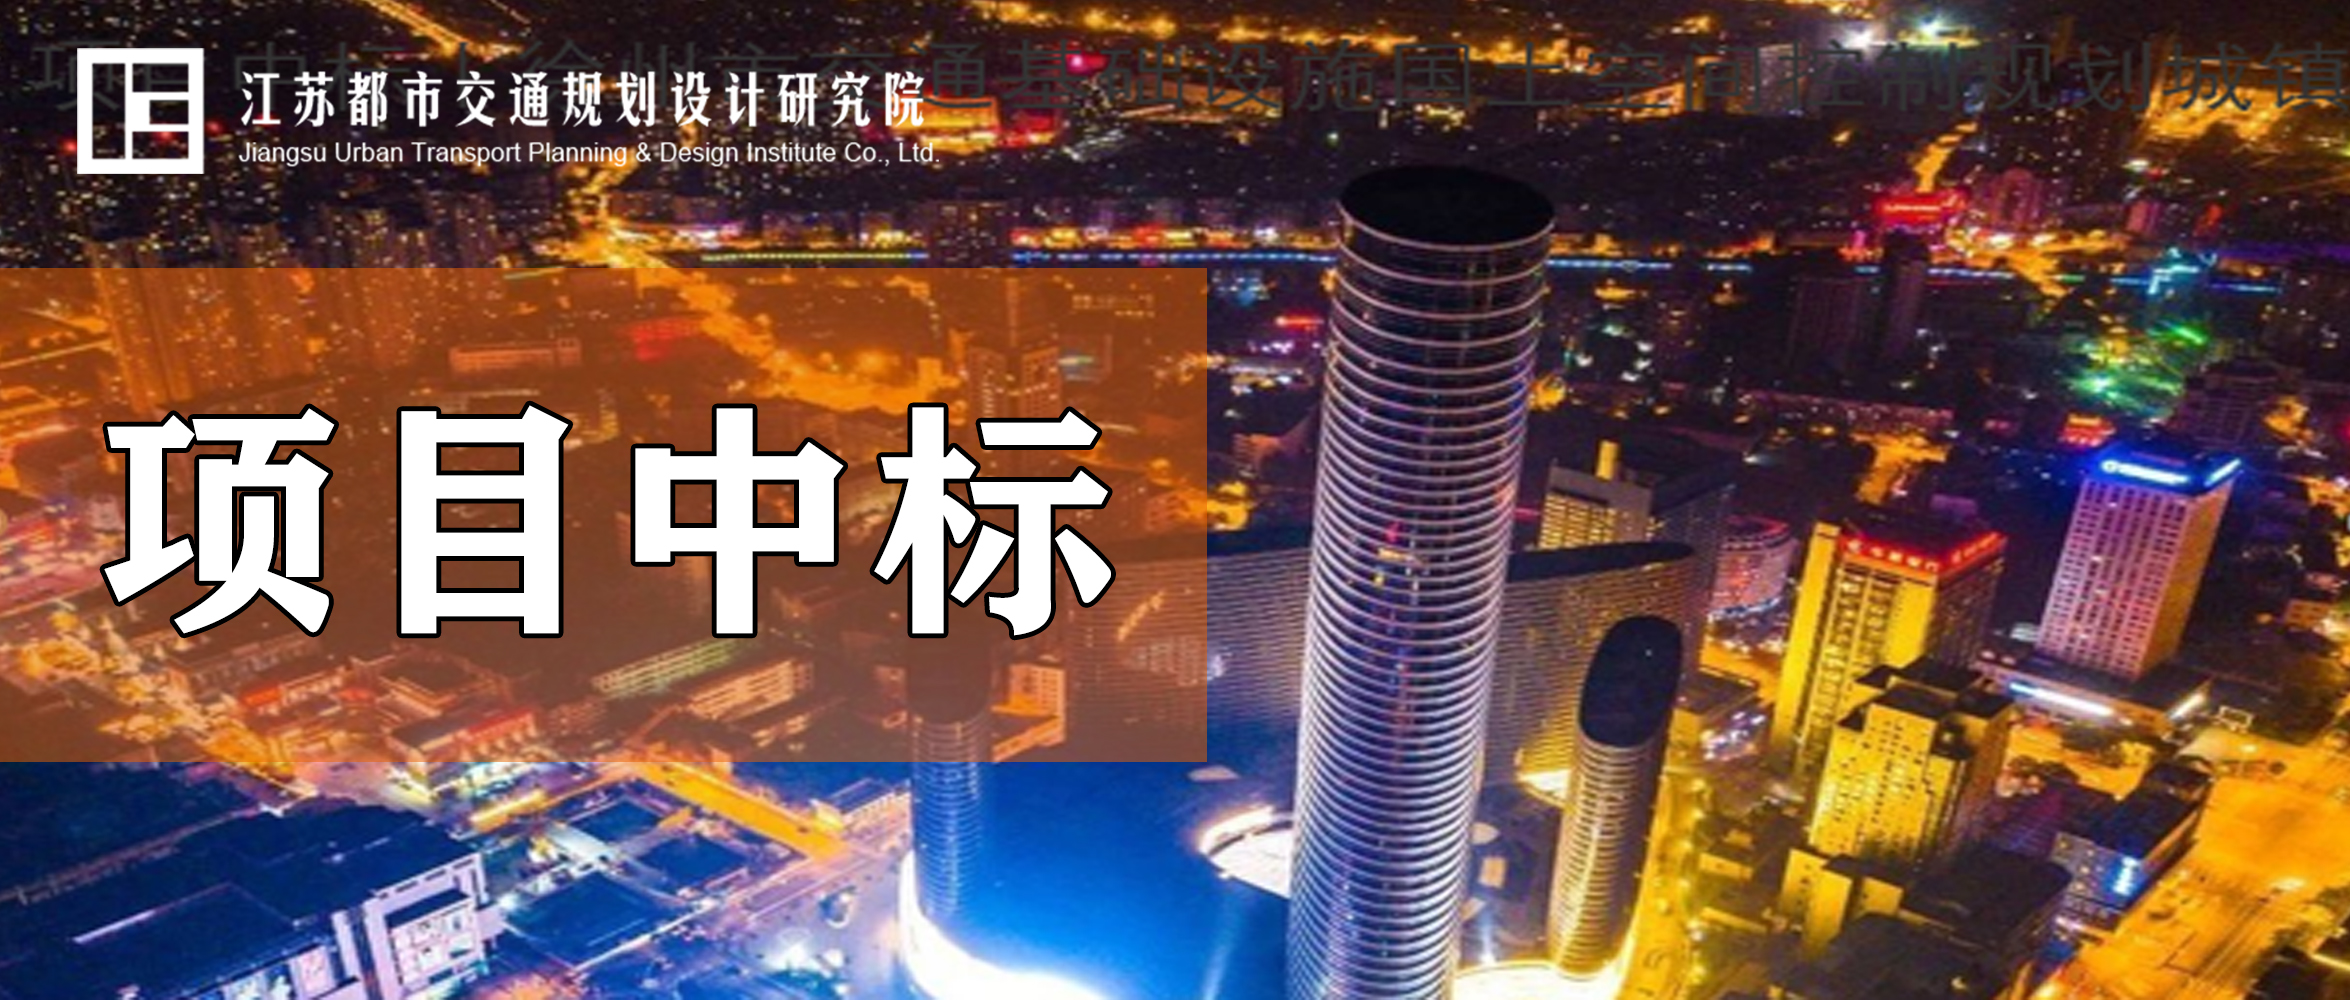 项目中标丨徐州市交通基础设施国土空间控制规划城镇发展影响专题研究项目